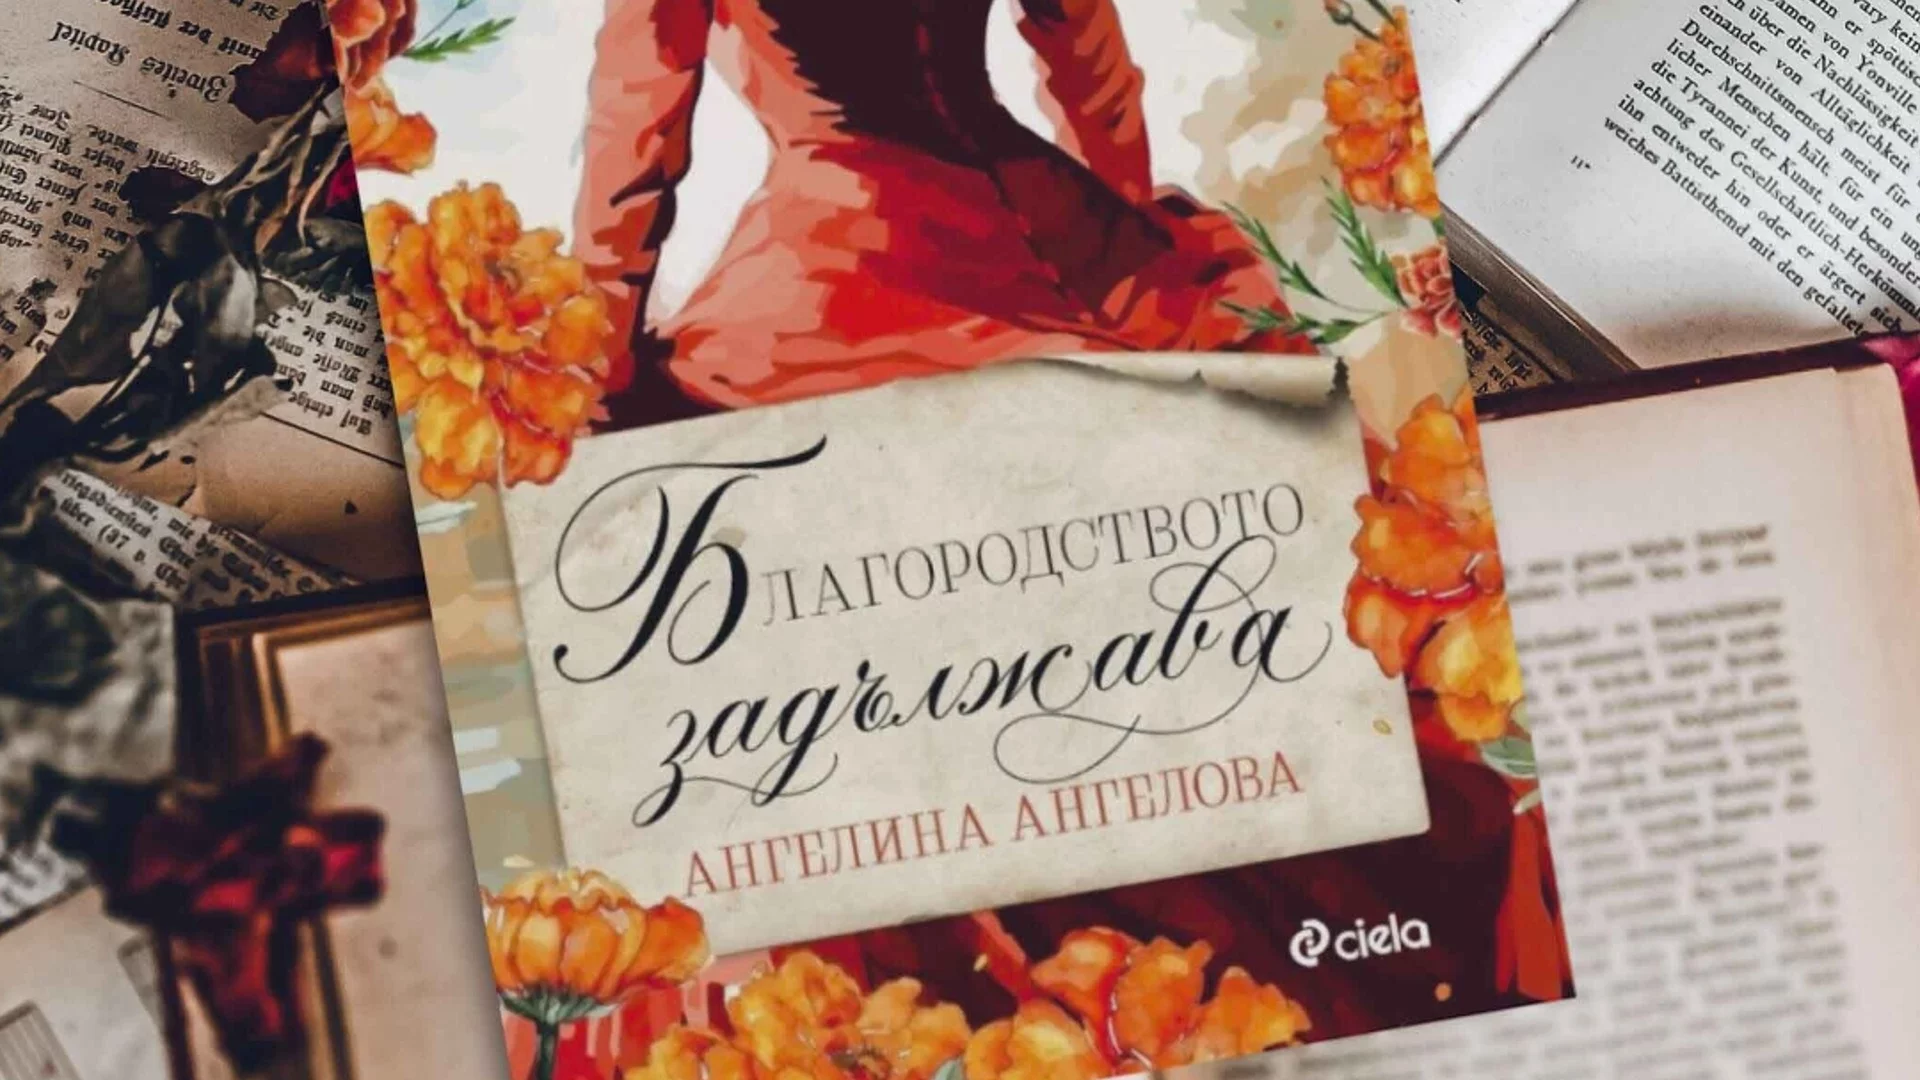 Пламенният роман „Благородството задължава“ от Ангелина Ангелова ще заплени влюбените в сагата „Бриджъртън“